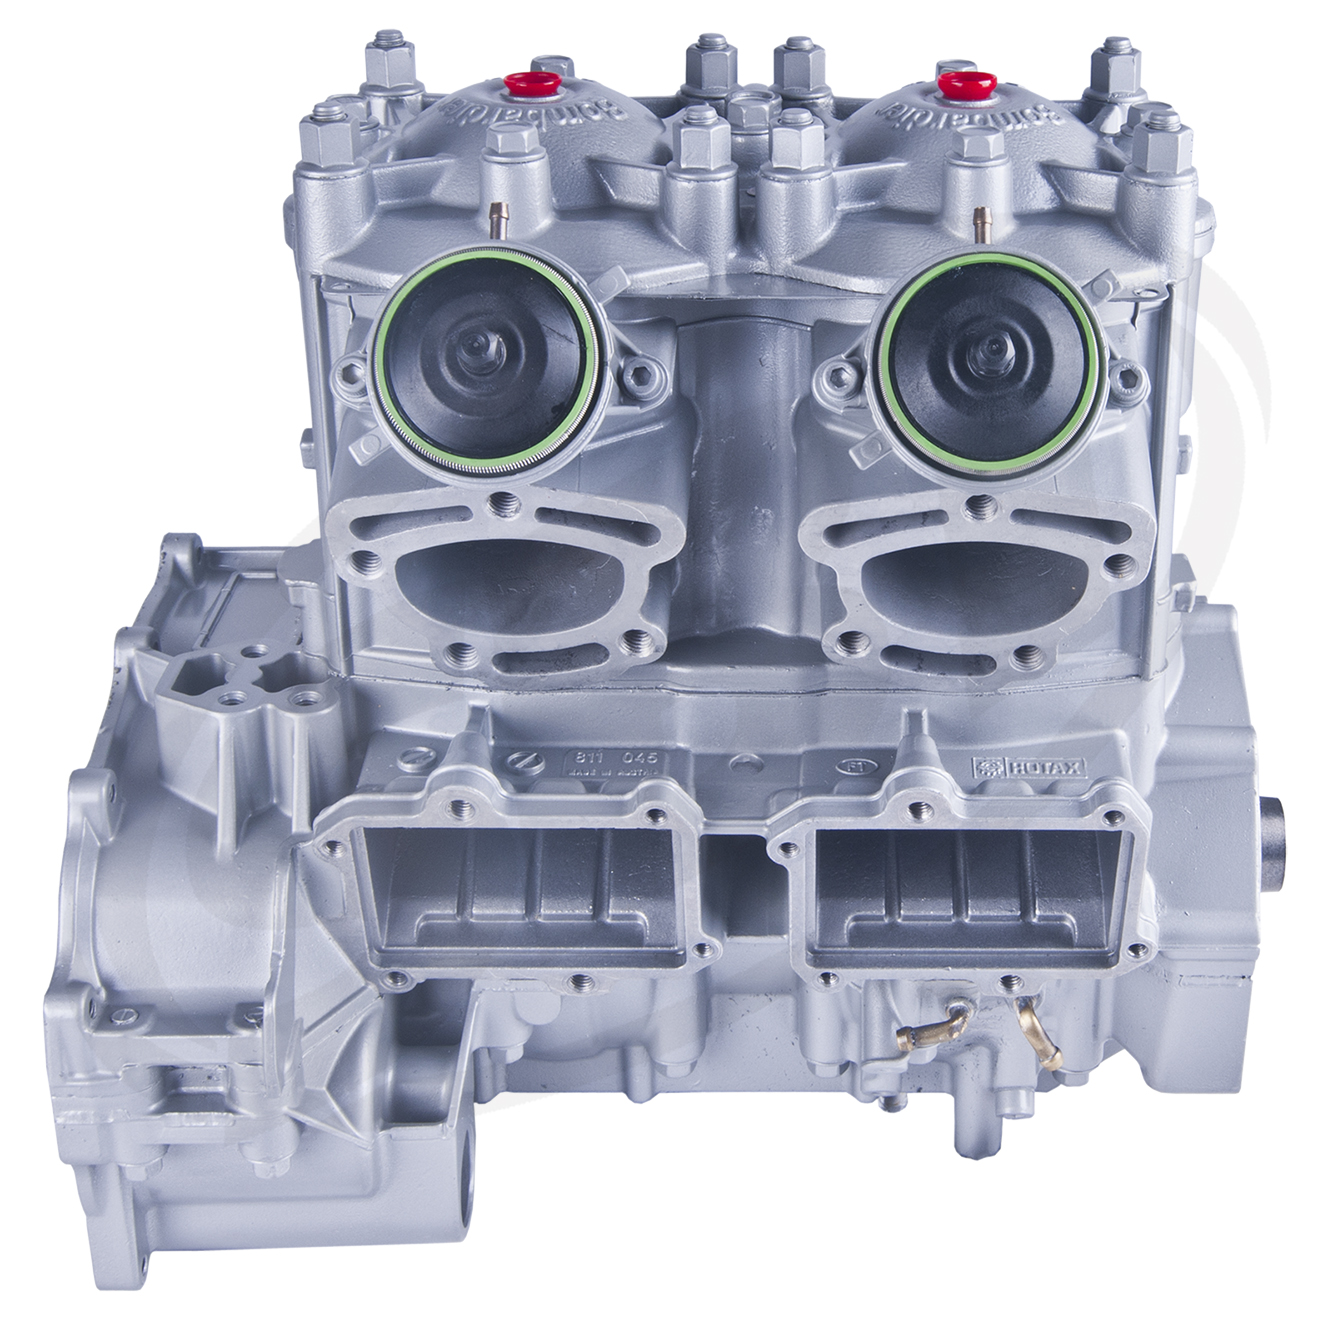 Engine for Sea-Doo 951 /947 Silver GSX LTD /GTX /XP LTD /VSP LTD /Sport LE RX /LRV 1998-2003: